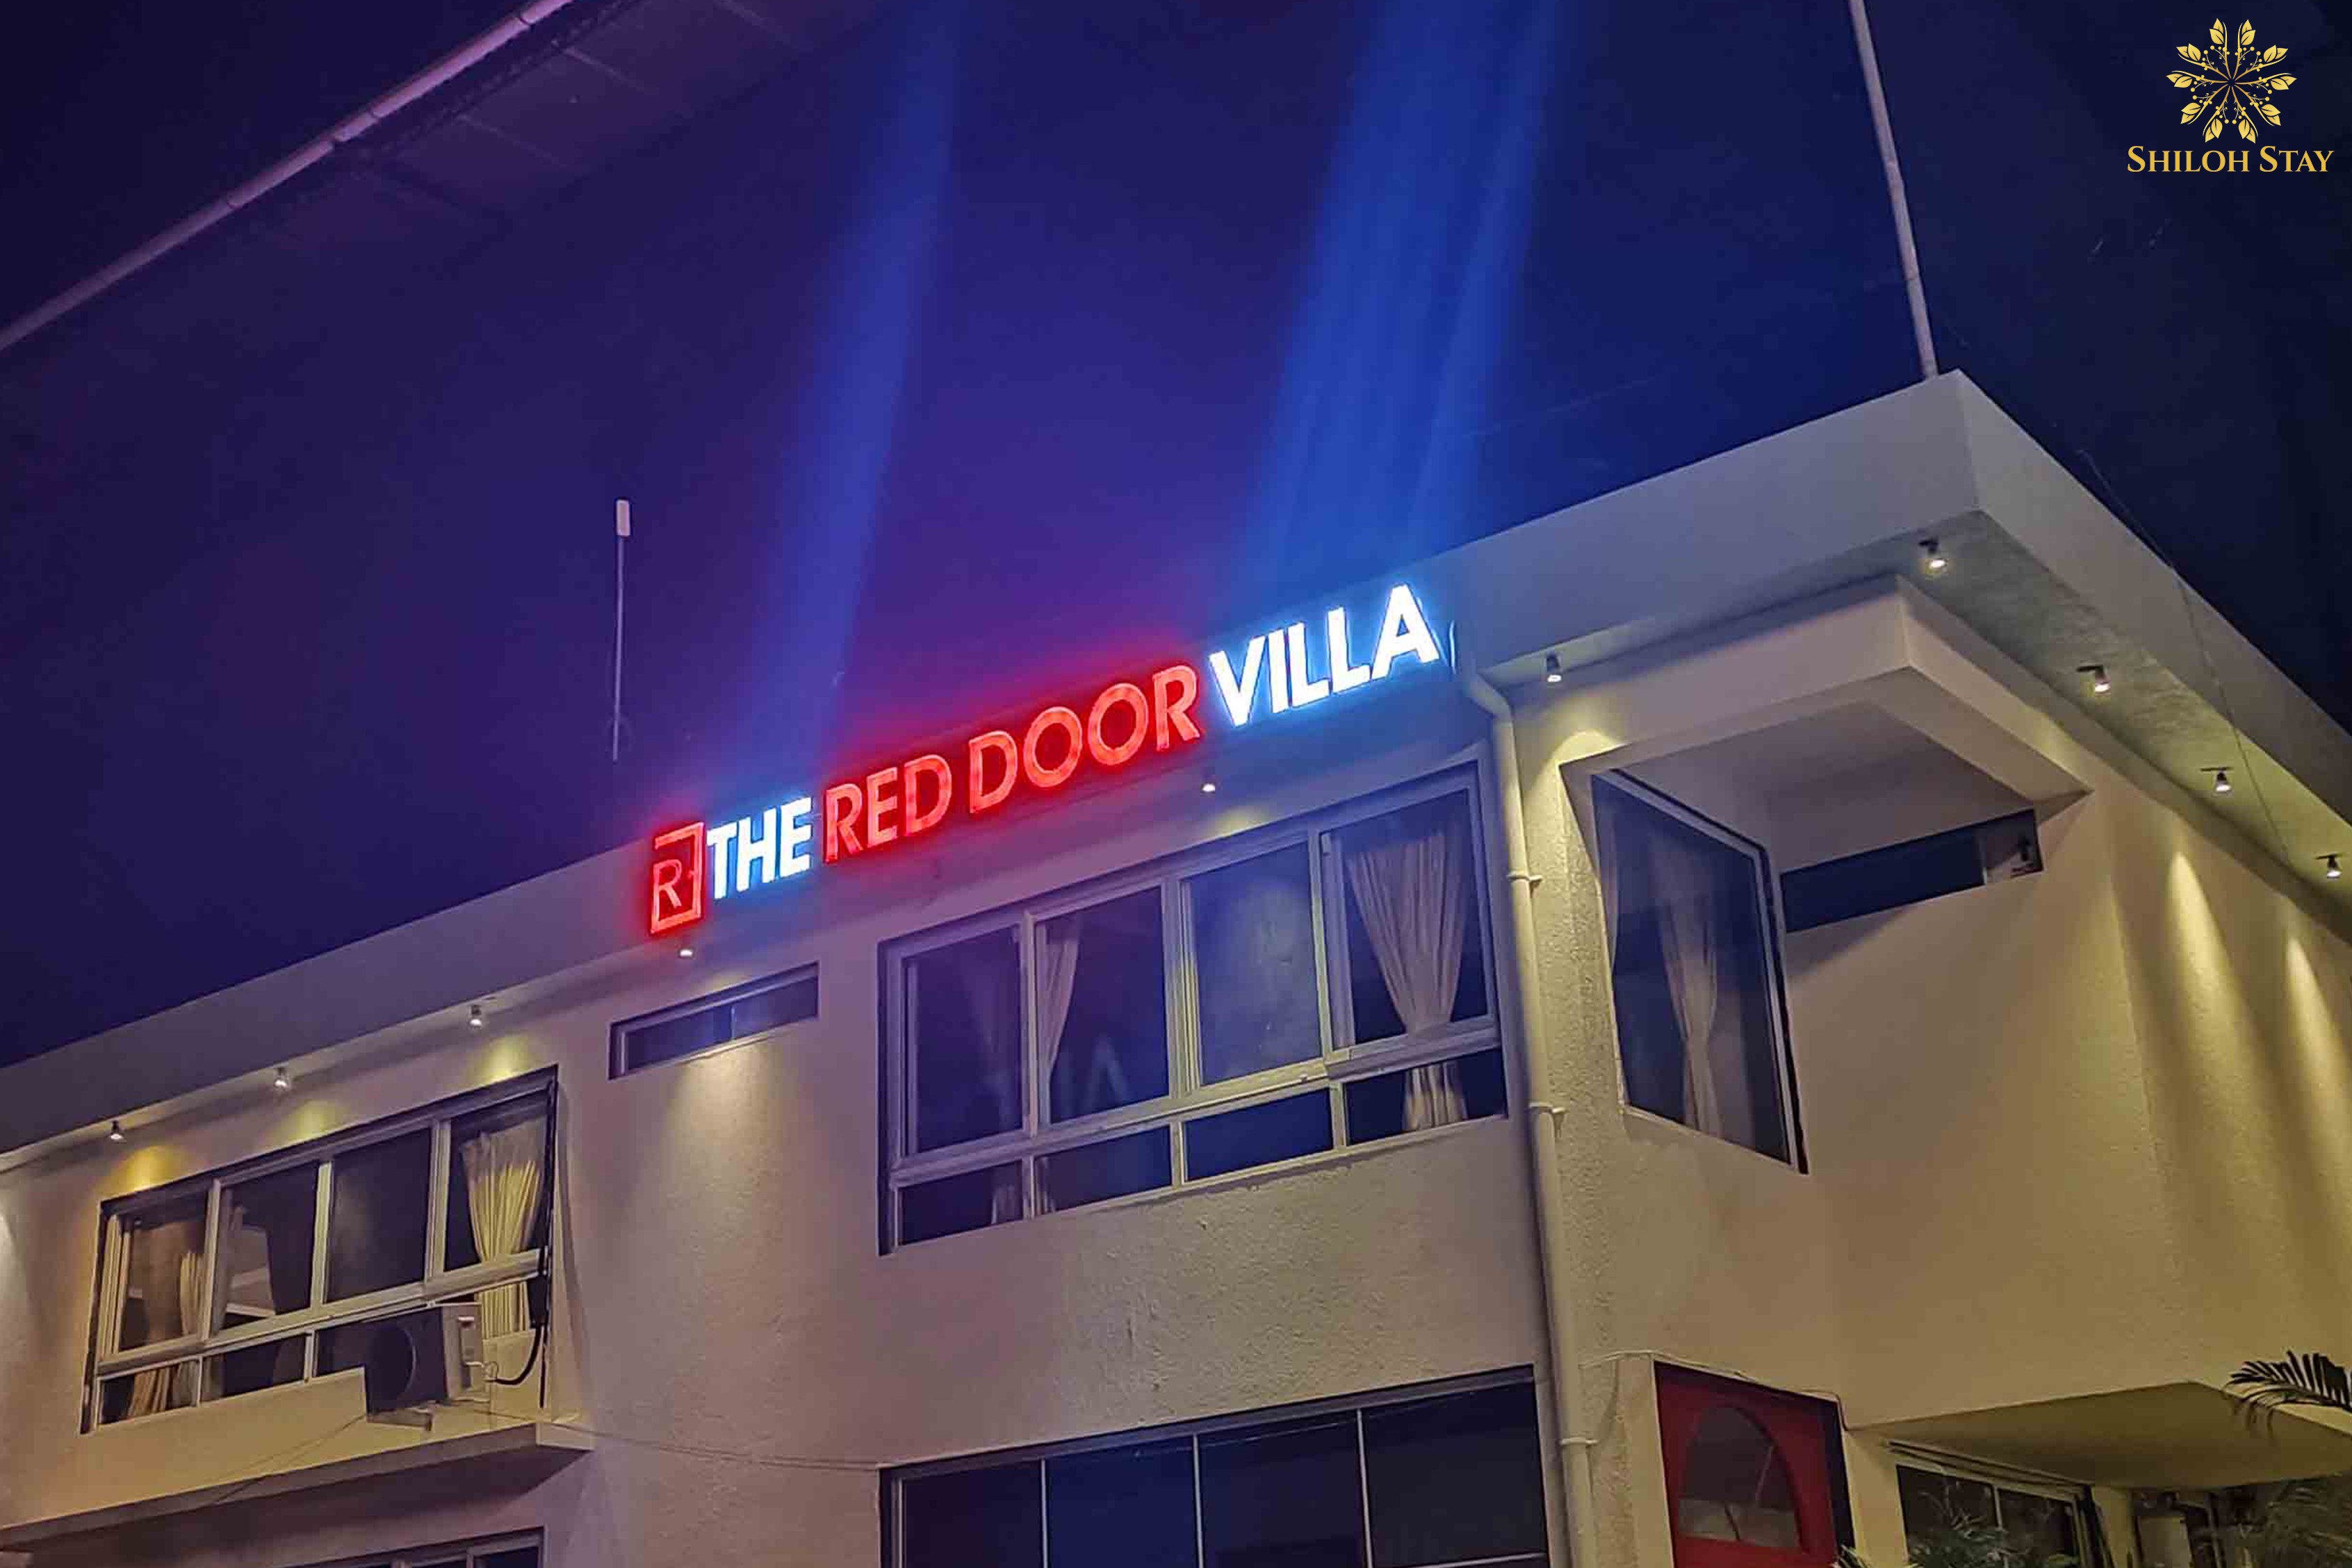 Red door villa